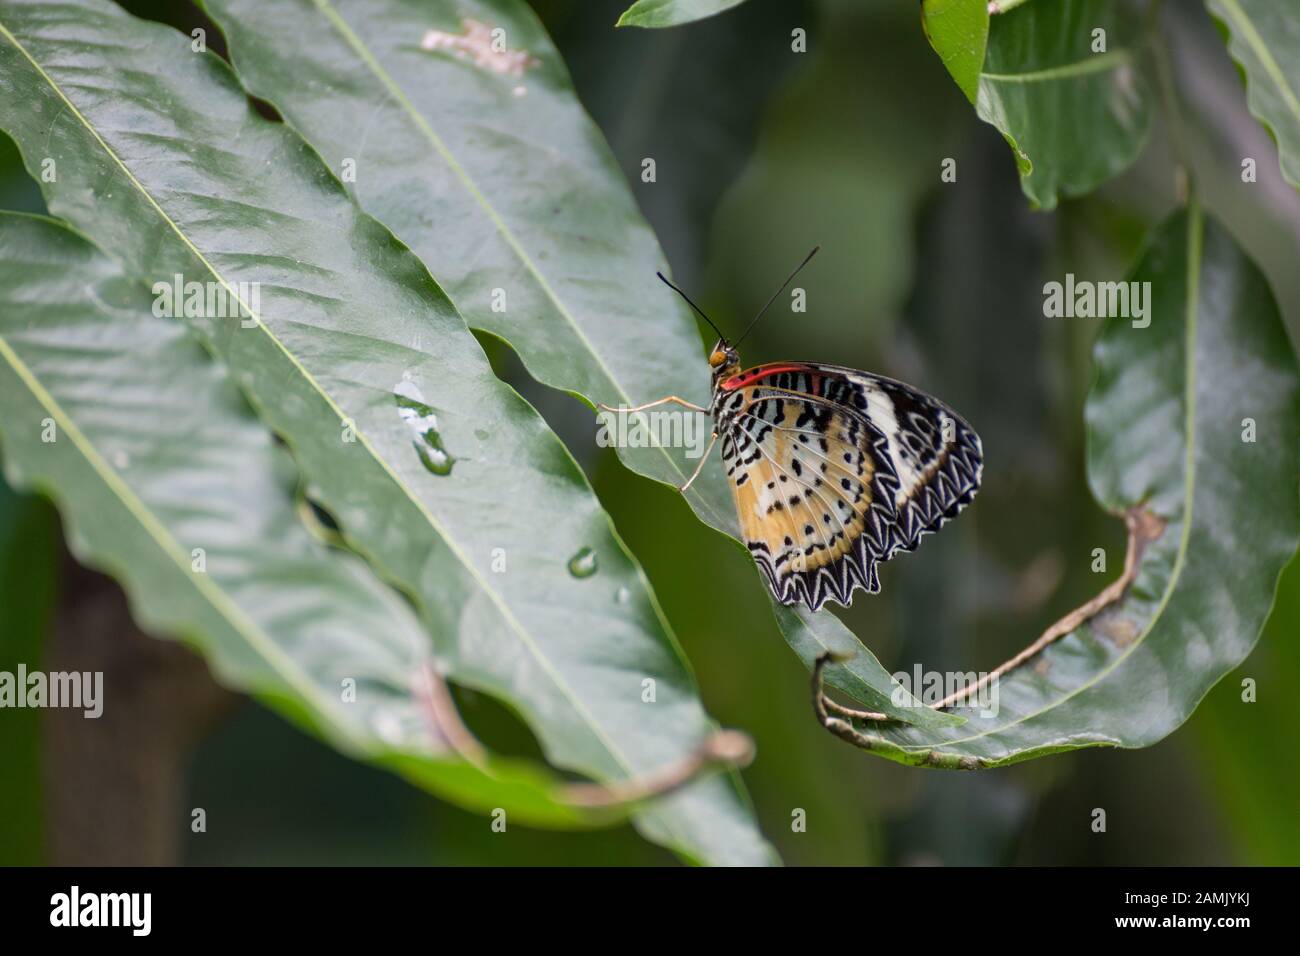 Mariposa motea en una hoja Foto de stock